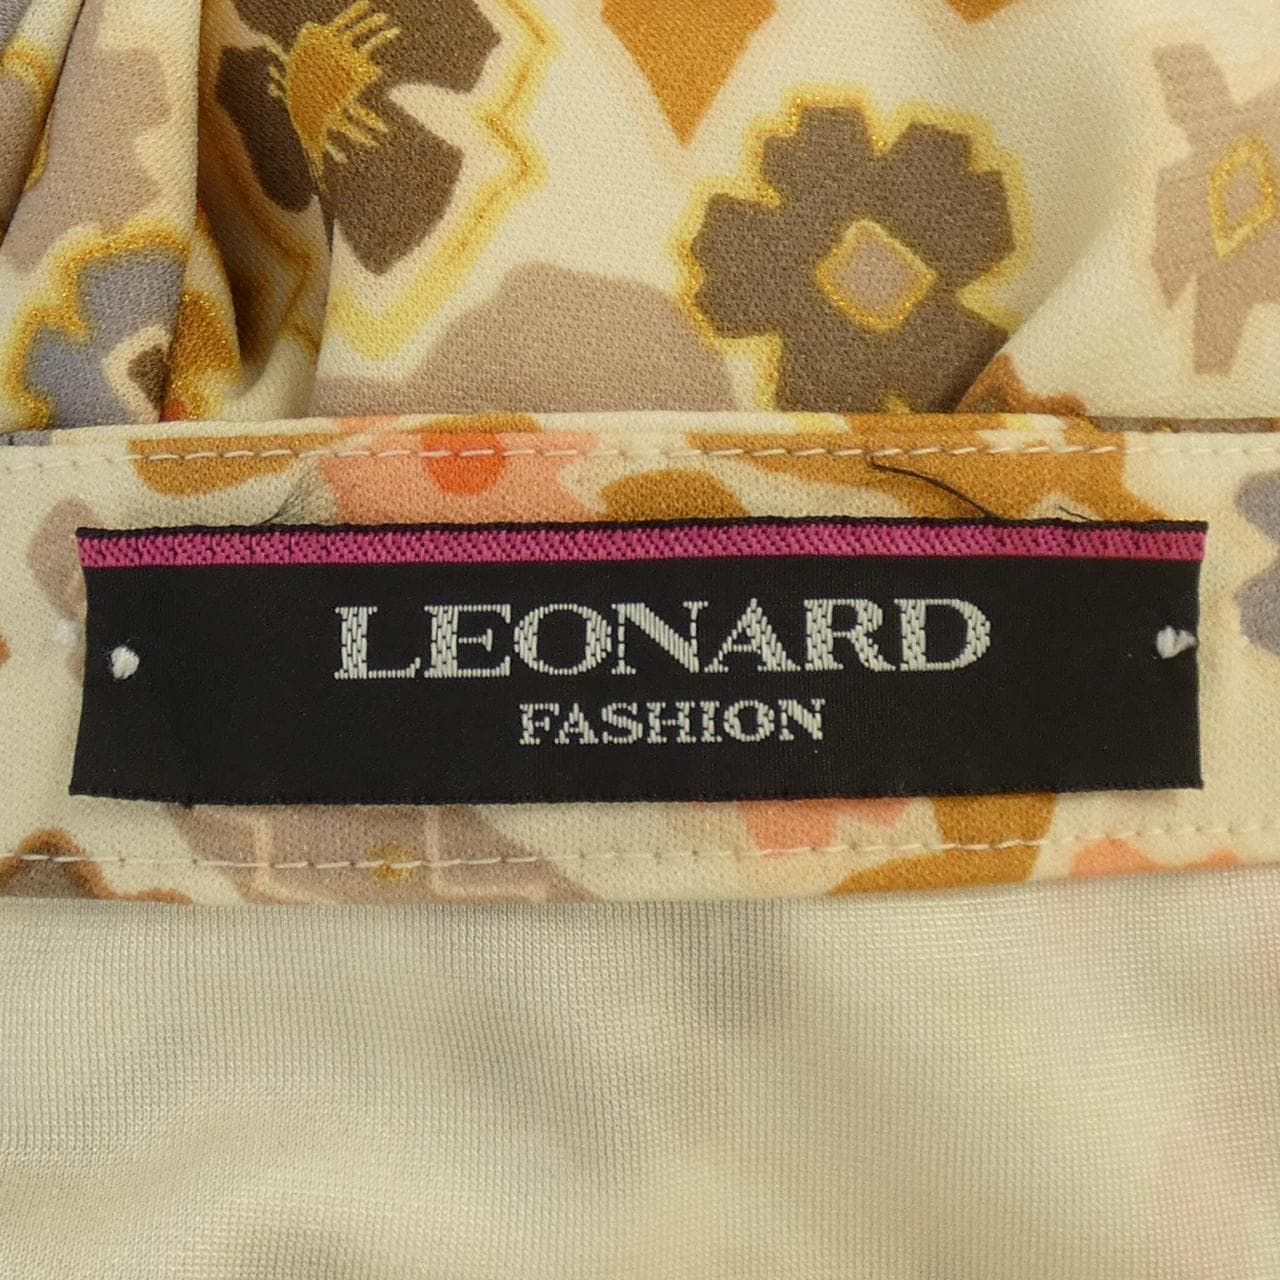 レオナールファッション LEONARD FASHION スカート